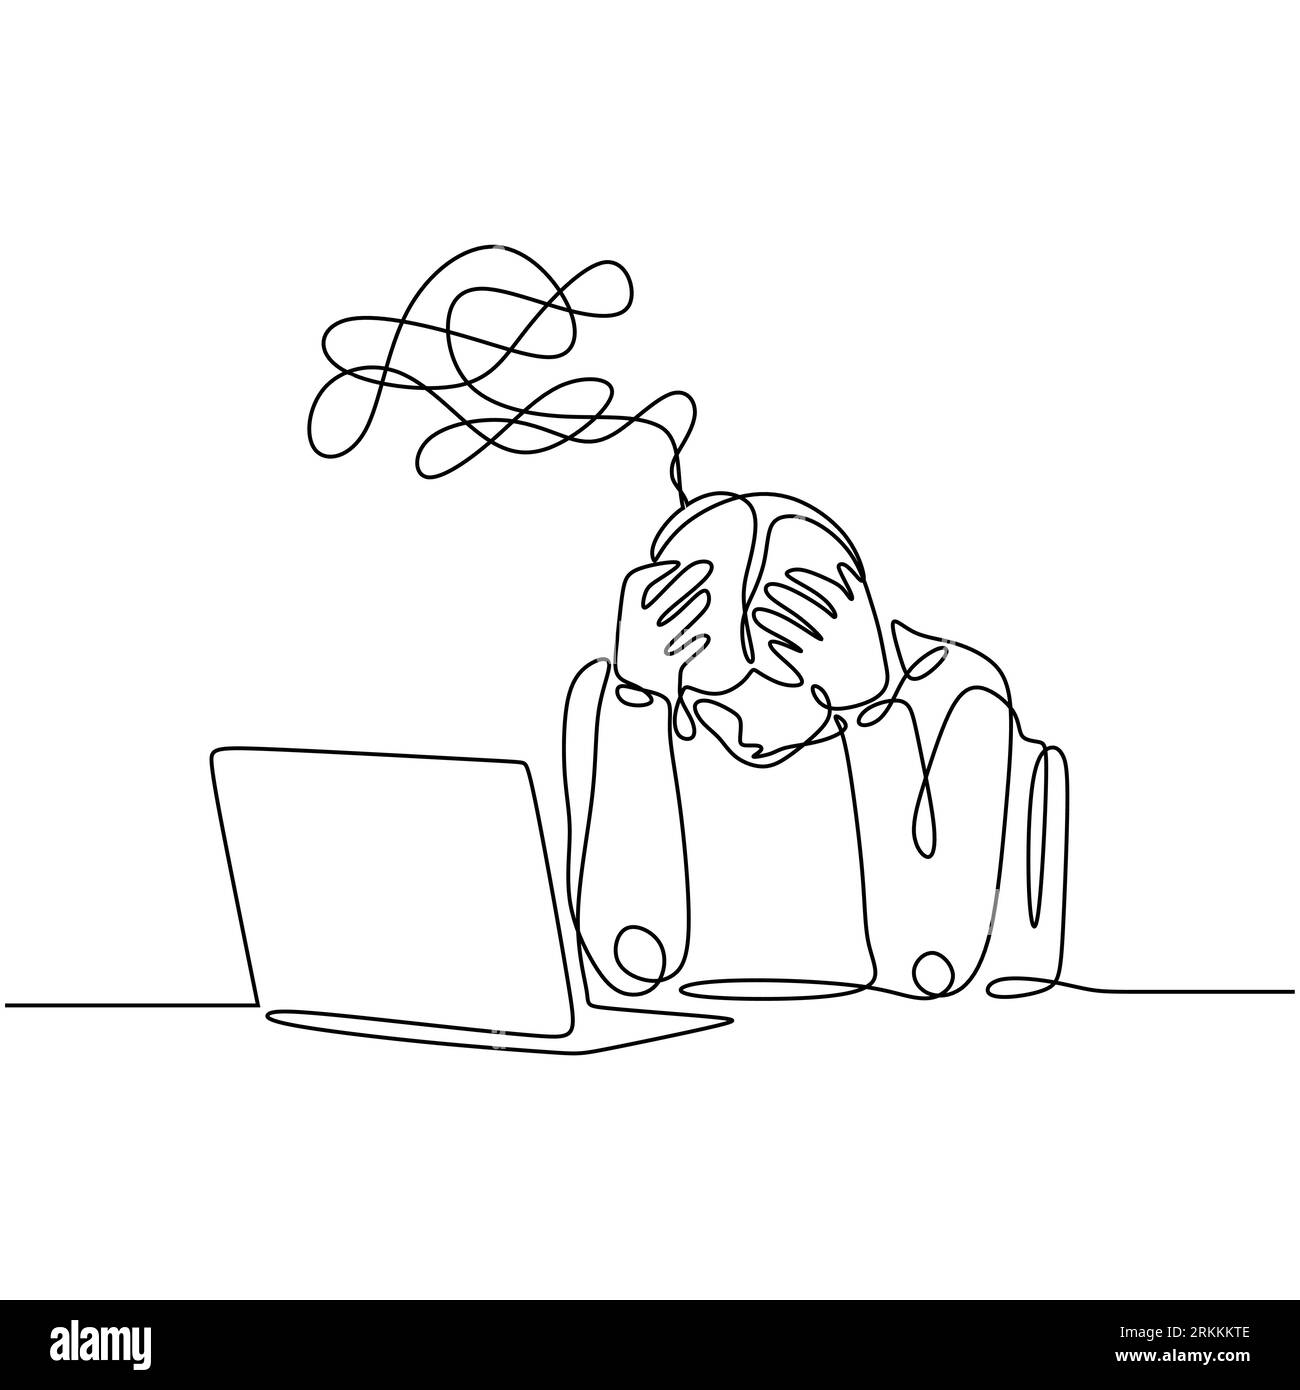 Eine Linie, die frustrierte Person mit ununterbrochenem handgezeichneten Stil zeichnet. Minimalistisches Kopfschmerzproblem Menschen vor einem Laptop. Stock Vektor